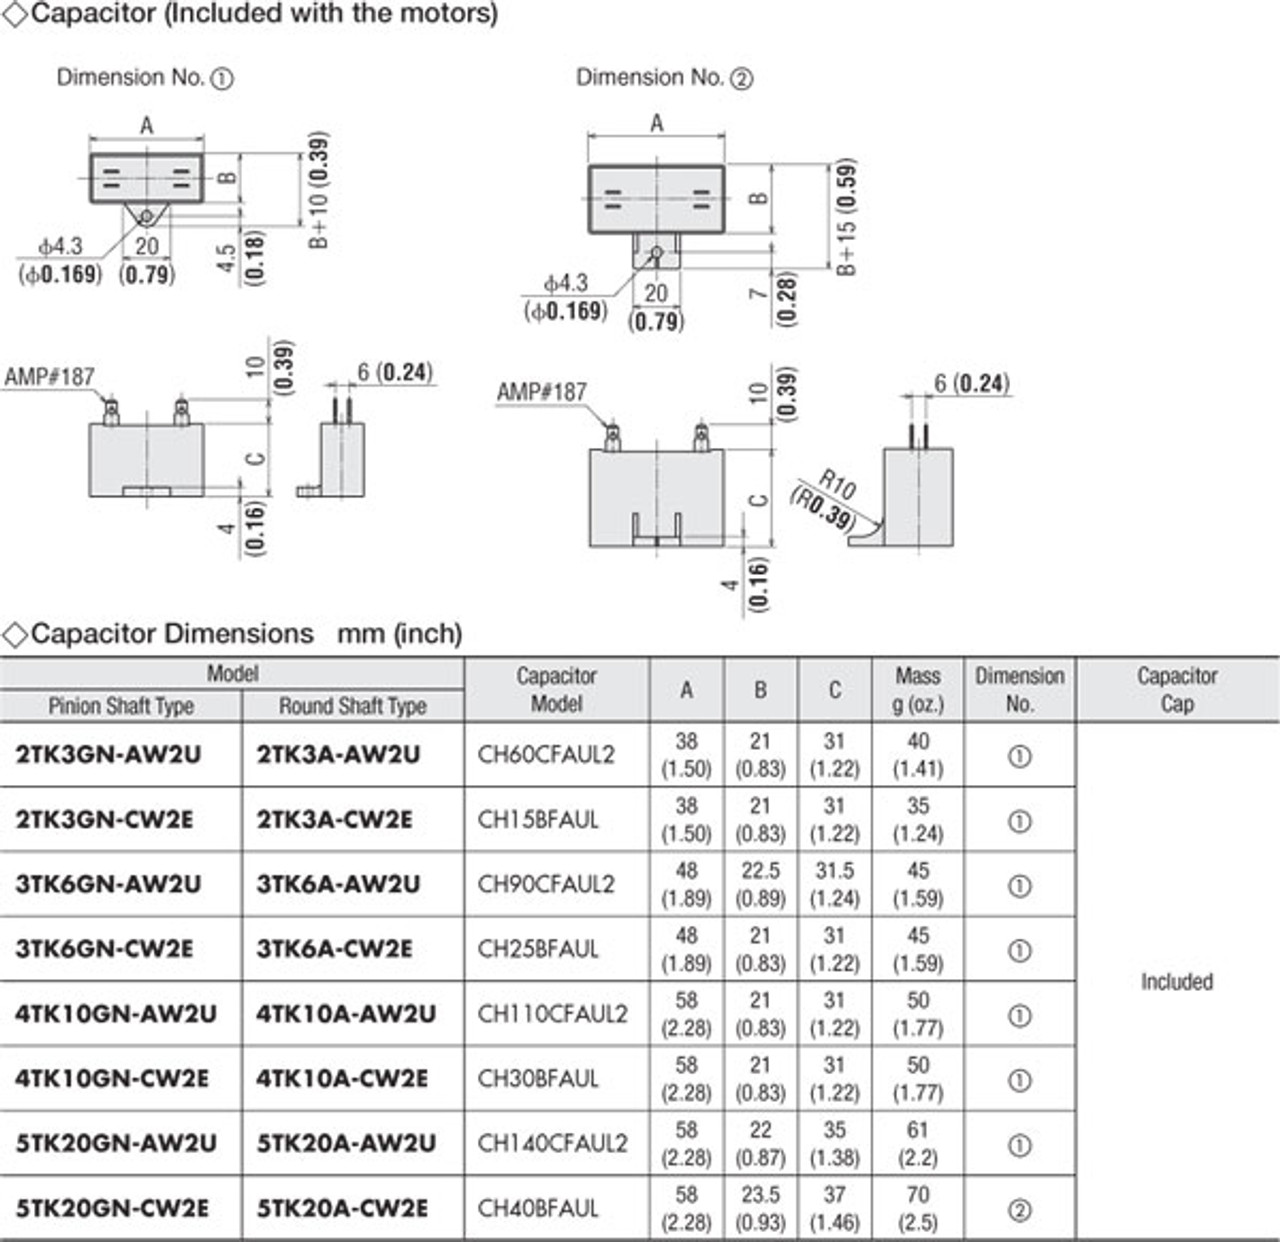 5TK20GN-CW2E / 5GN30SA - Capacitor